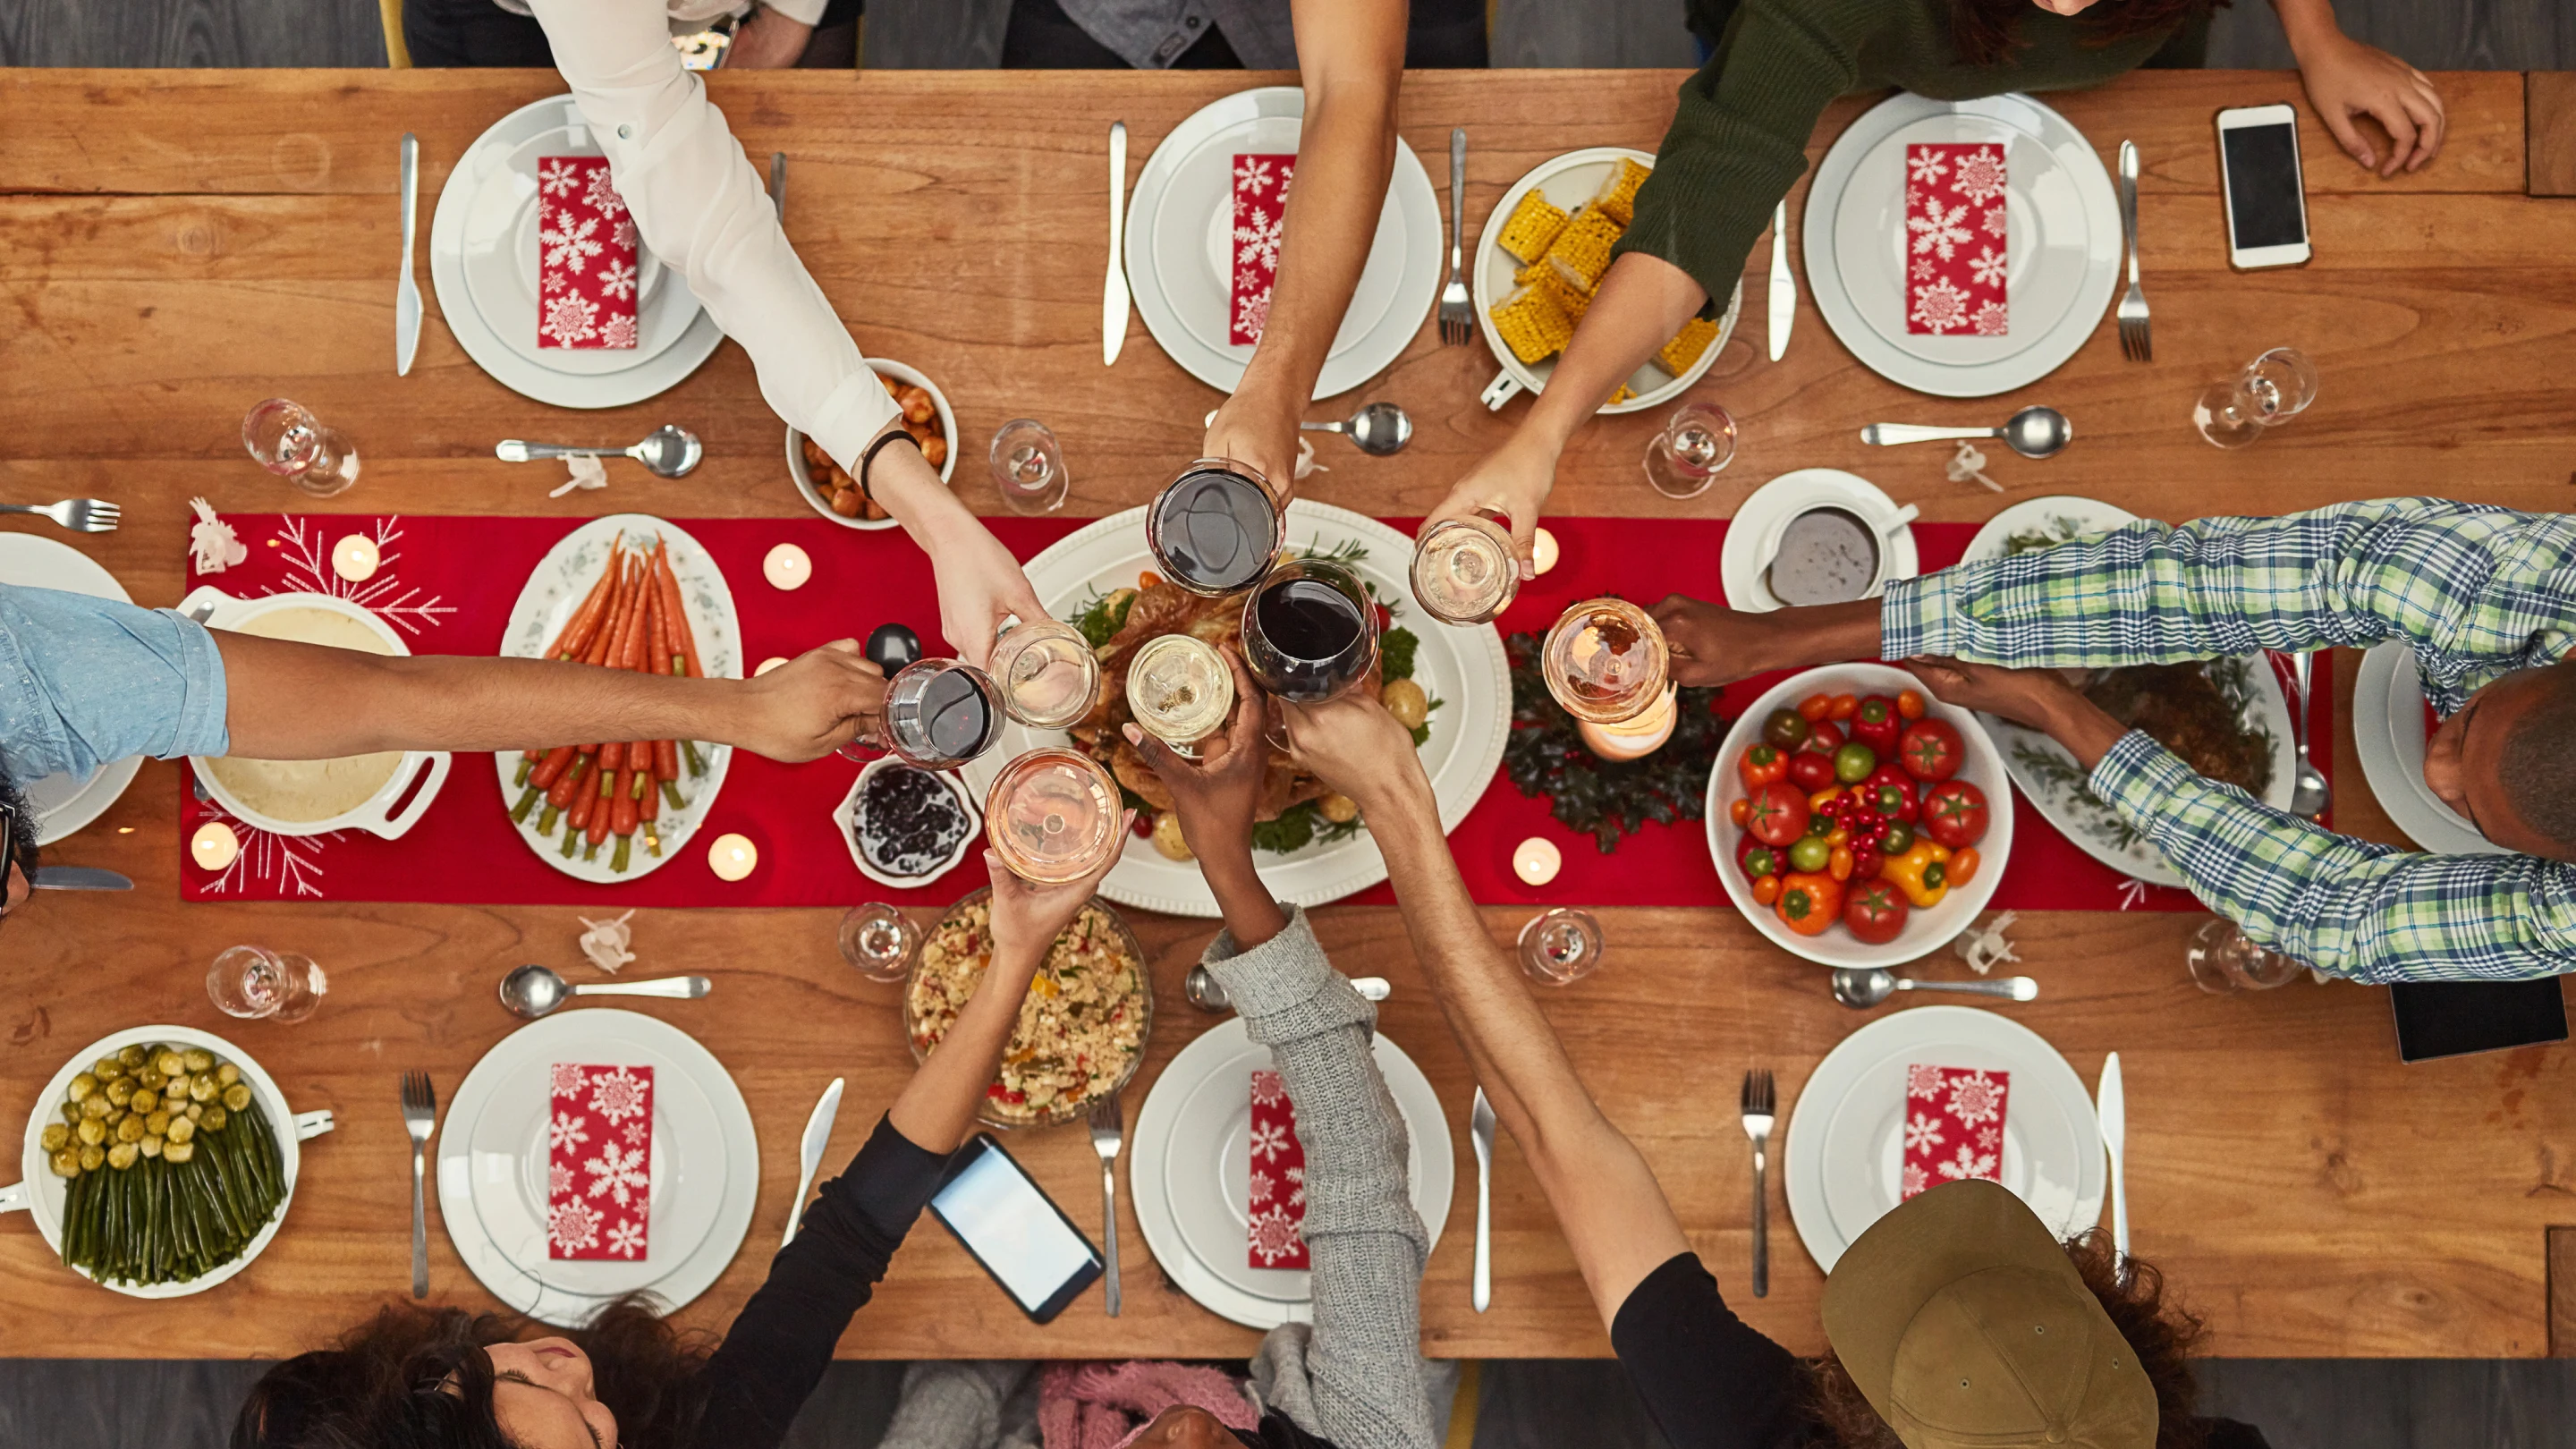 共に食卓を囲んでいる人々の画像。木製のテーブルの中央に鮮やかなレッドの薄いテーブルクロスが敷かれている。7 人が食卓についており、乾杯をするために飲み物が入ったグラスを全員持ち上げている。テーブルには採れたてのトマト、軸がついたトウモロコシ、ニンジン、ローストチキンなど、さまざまな食べ物が並んでいる。7 人の前には陶製の皿ひと組とフォーク、ナイフ、スプーン、白と赤の花柄のナプキンが置かれている。 